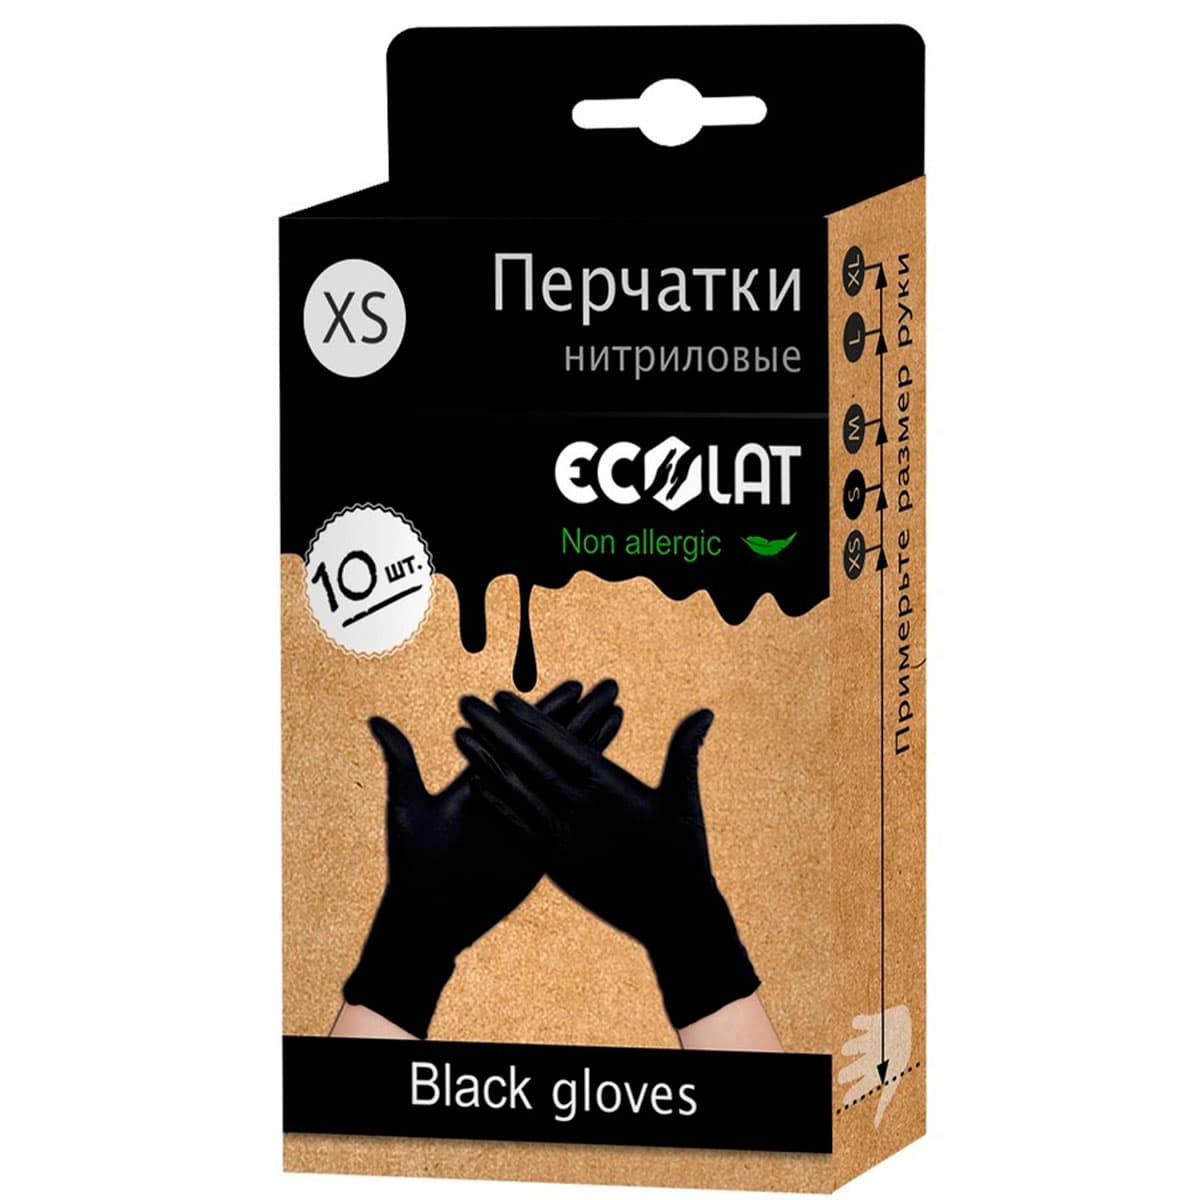 Перчатки одноразовые нитриловые ECOLAT XS, чёрные, 10 шт. 